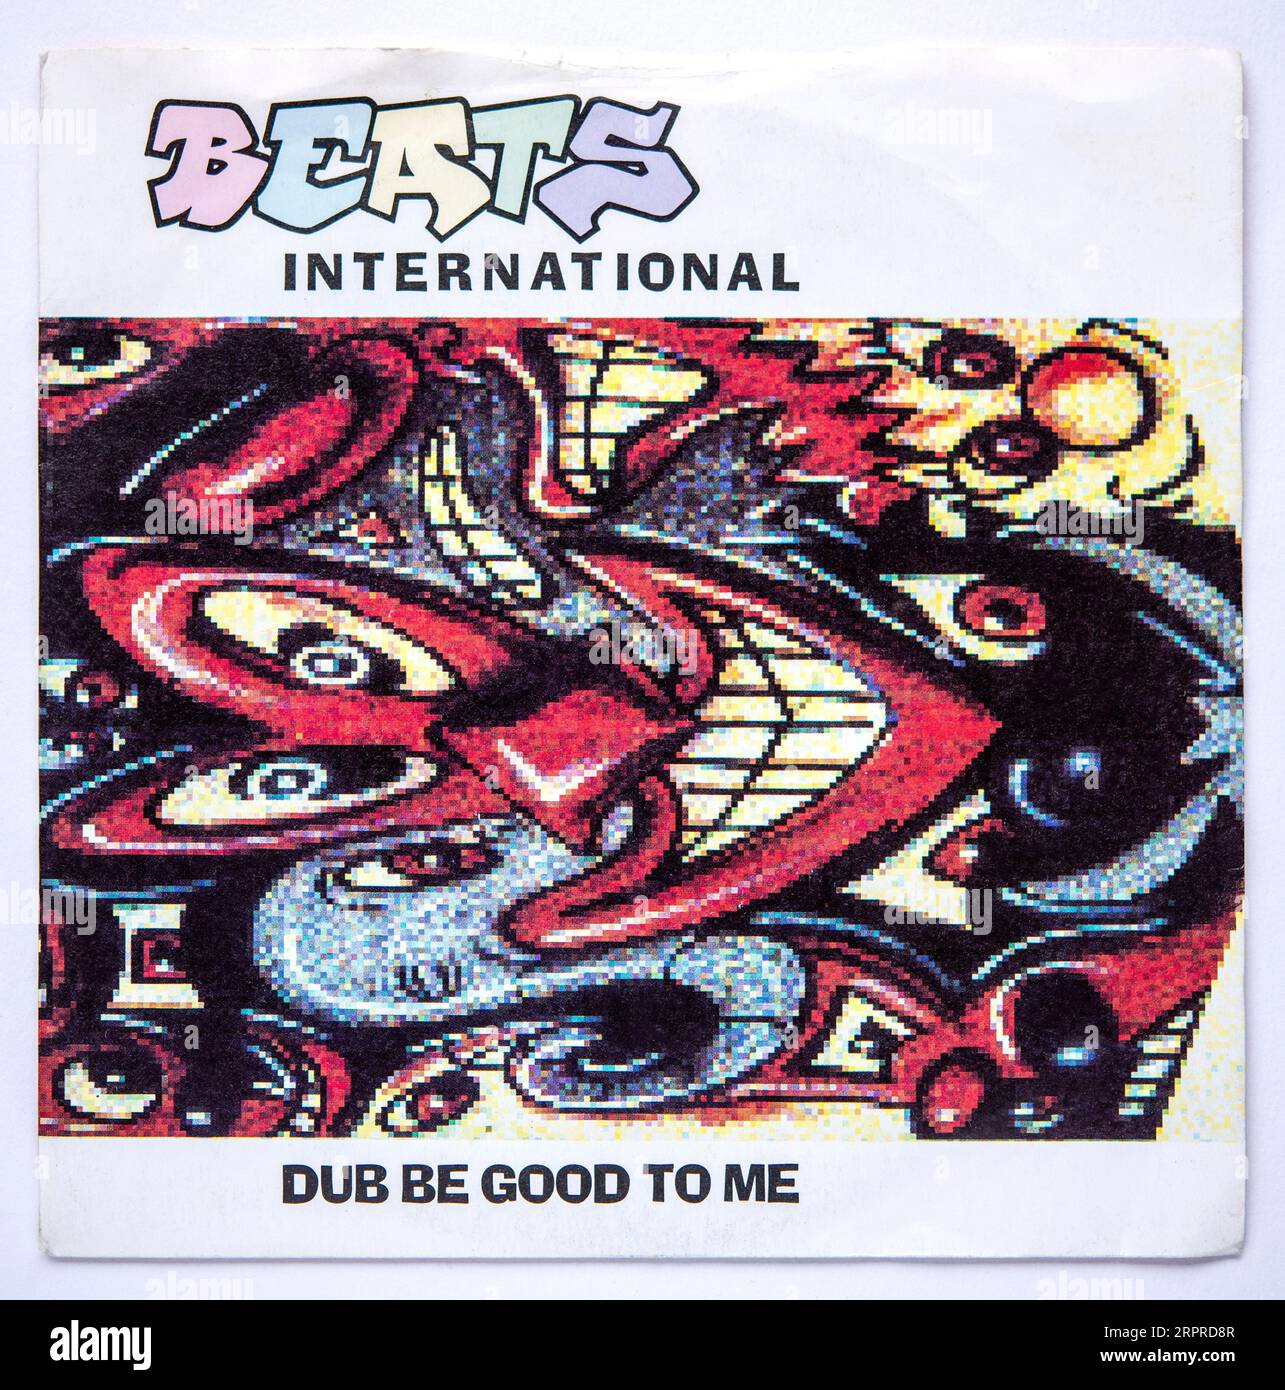 Couverture photo de la version single Seven inch de Dub Be Good to Me de Beats International, sortie en 1990 Banque D'Images